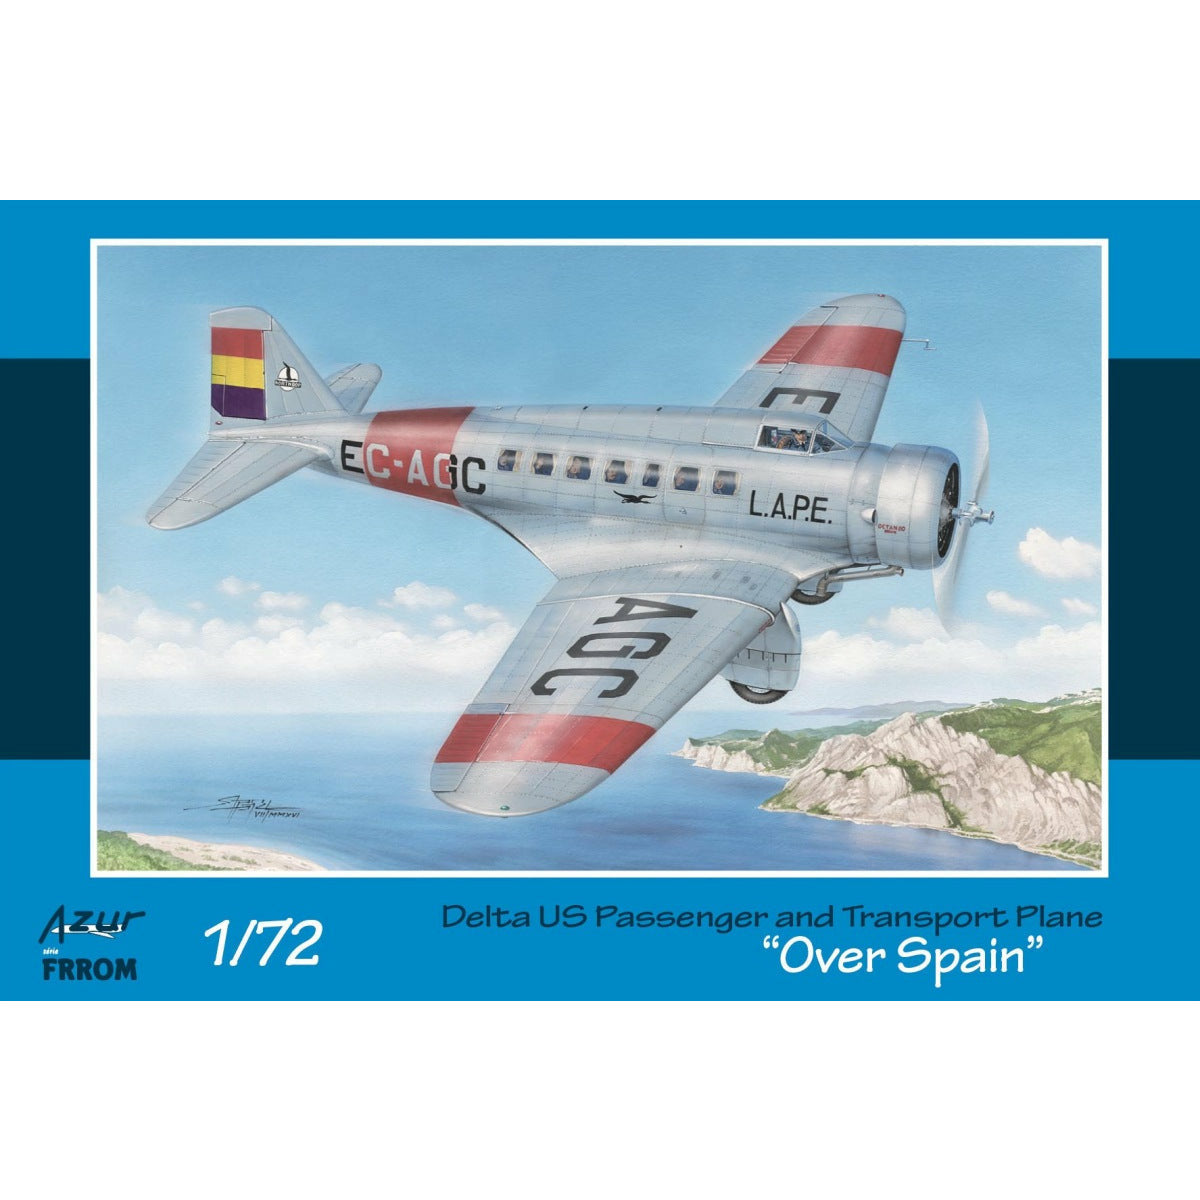 FRROM 1/72 Delta US Passenger and Transport Plane "Over Spain"